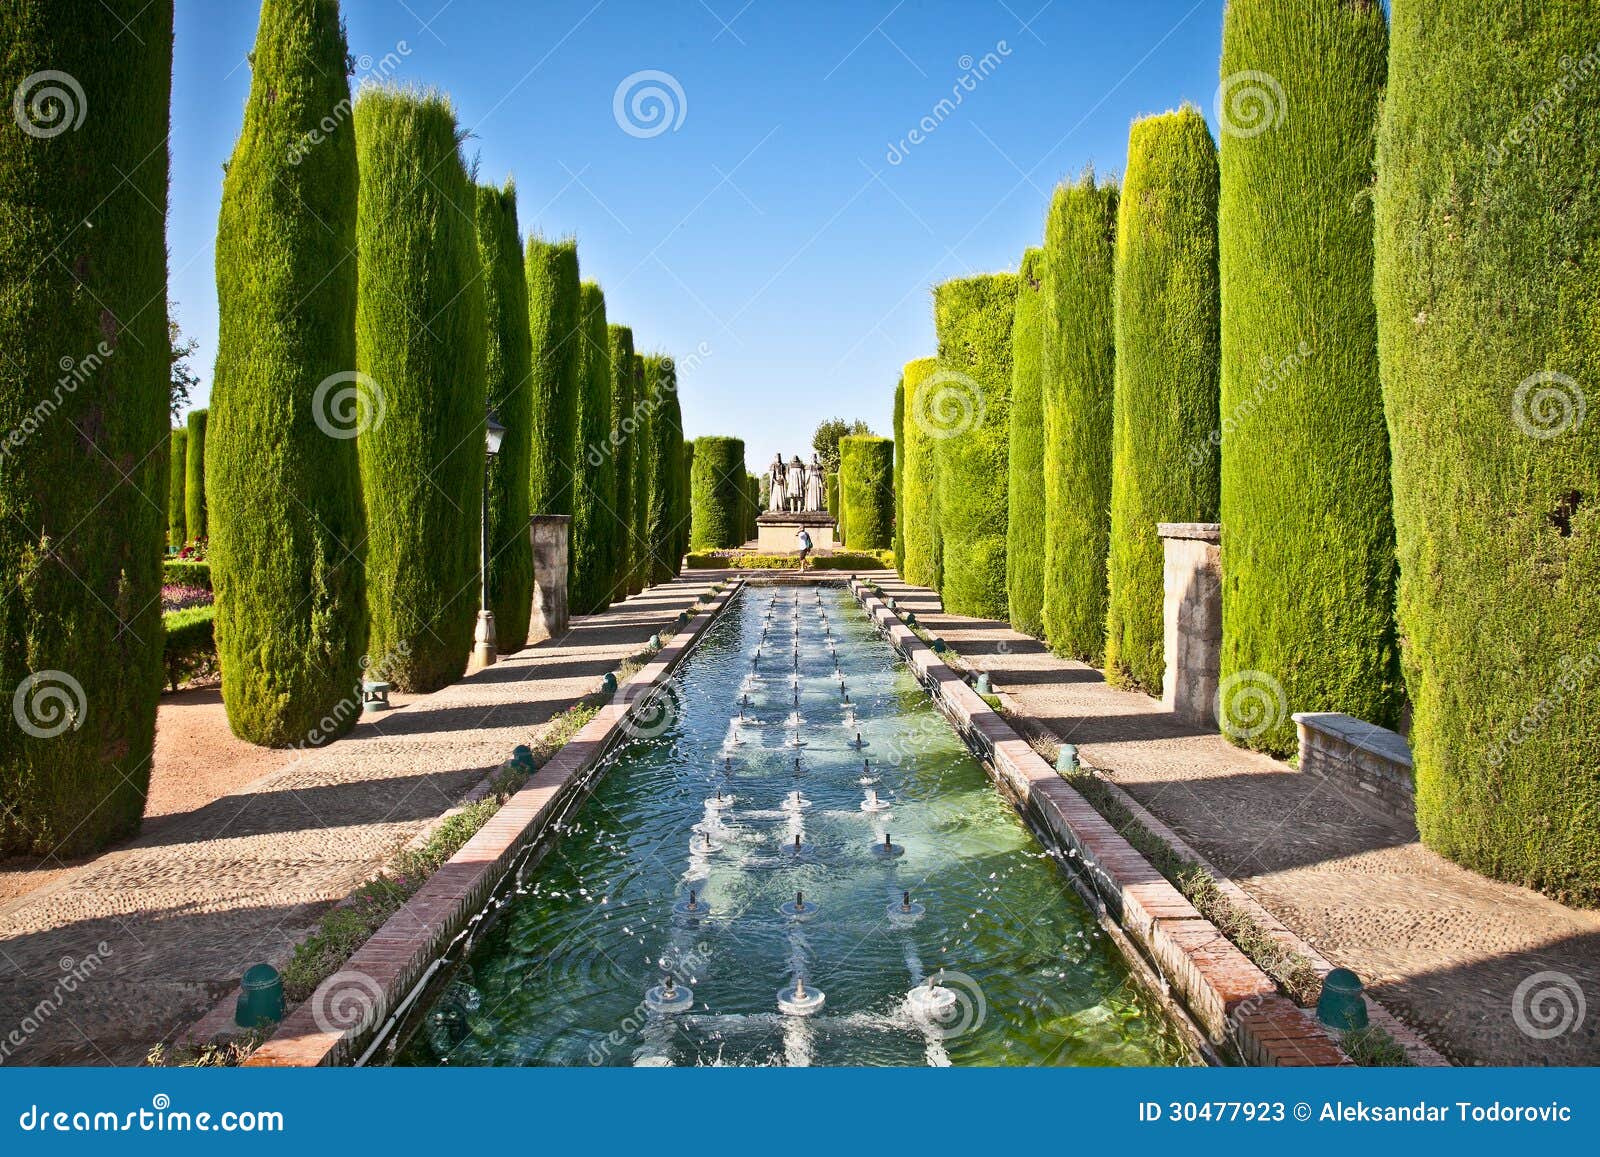 gardens at the alcazar de los reyes cristianos in cordoba, spain